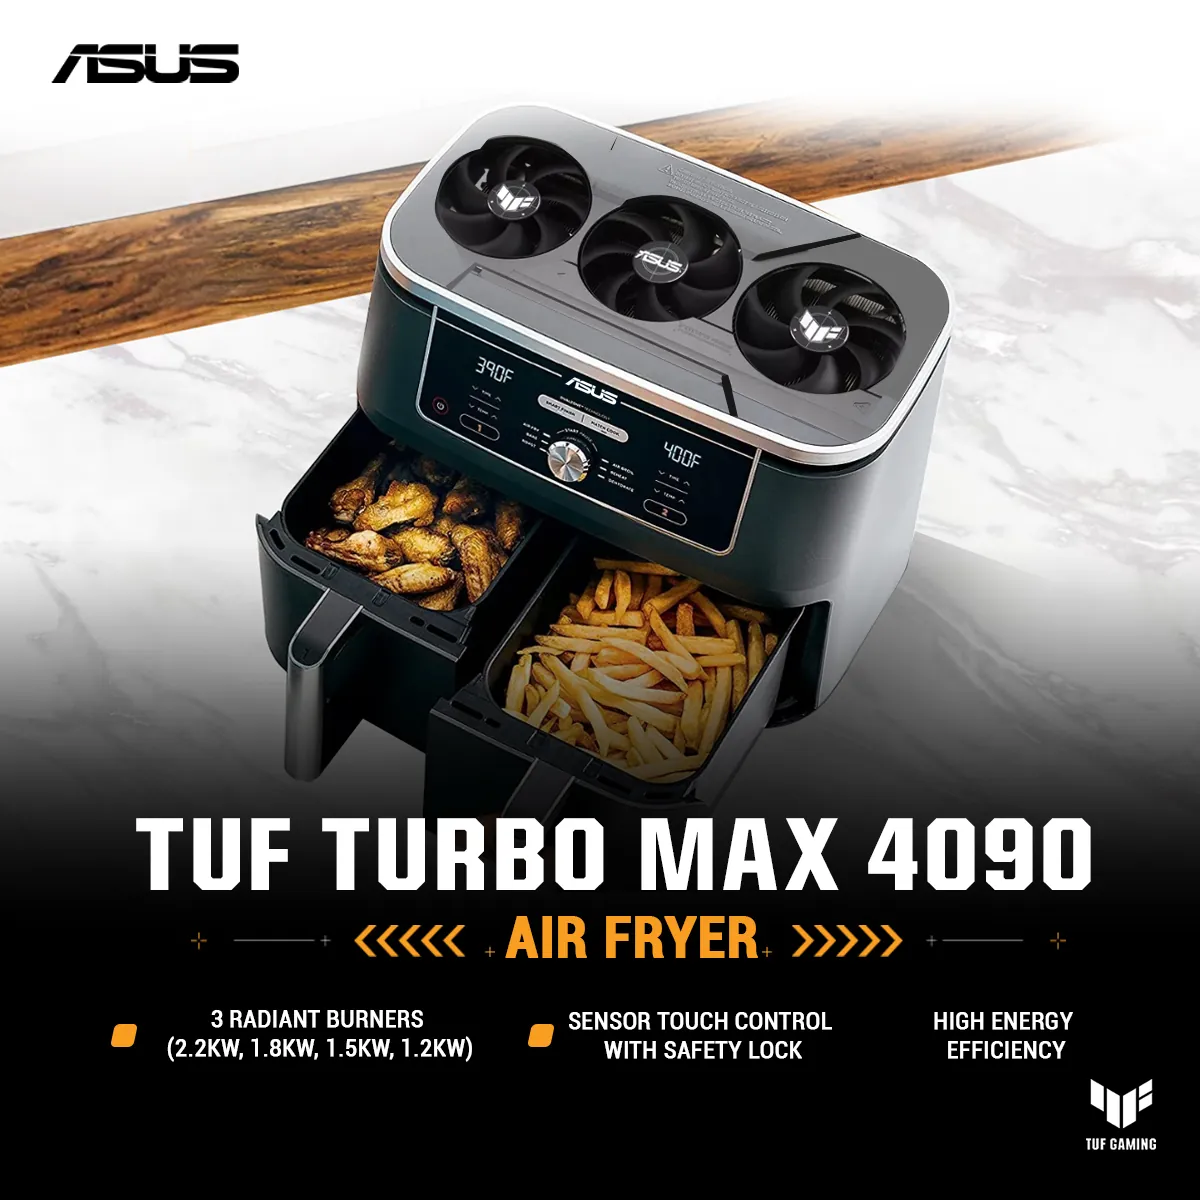 Asus Tuf Turbo Max 4090